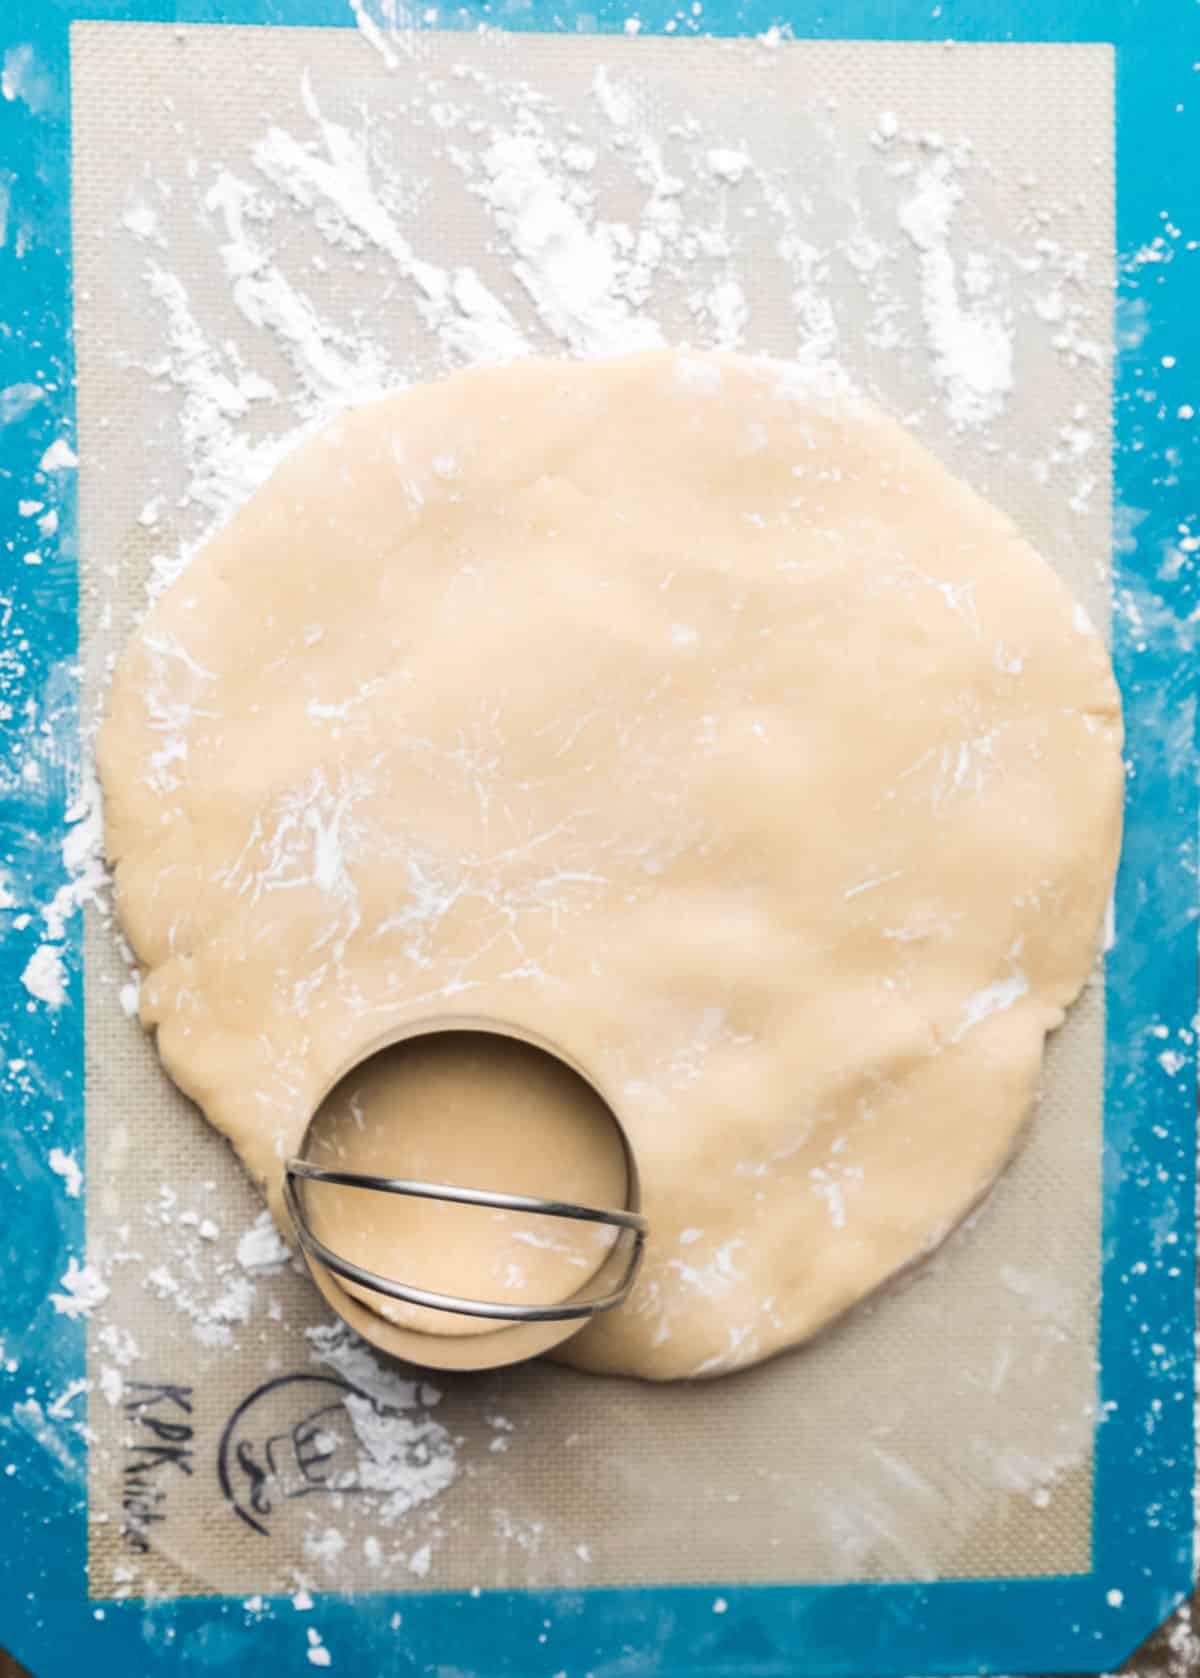 A round cookie cutter cutting cookie dough. 